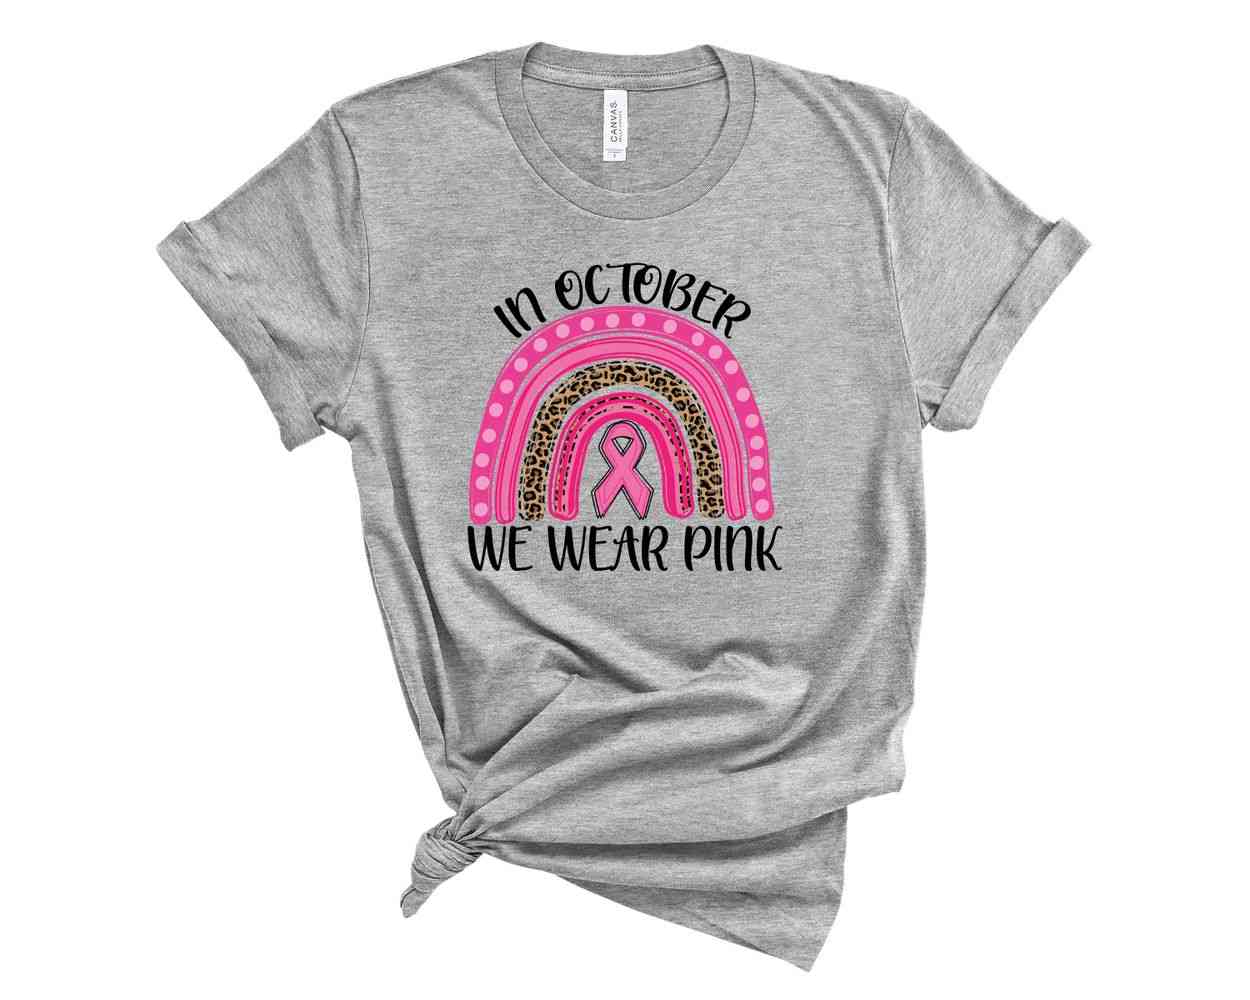 Nous portons un t-shirt rose de sensibilisation au cancer du sein